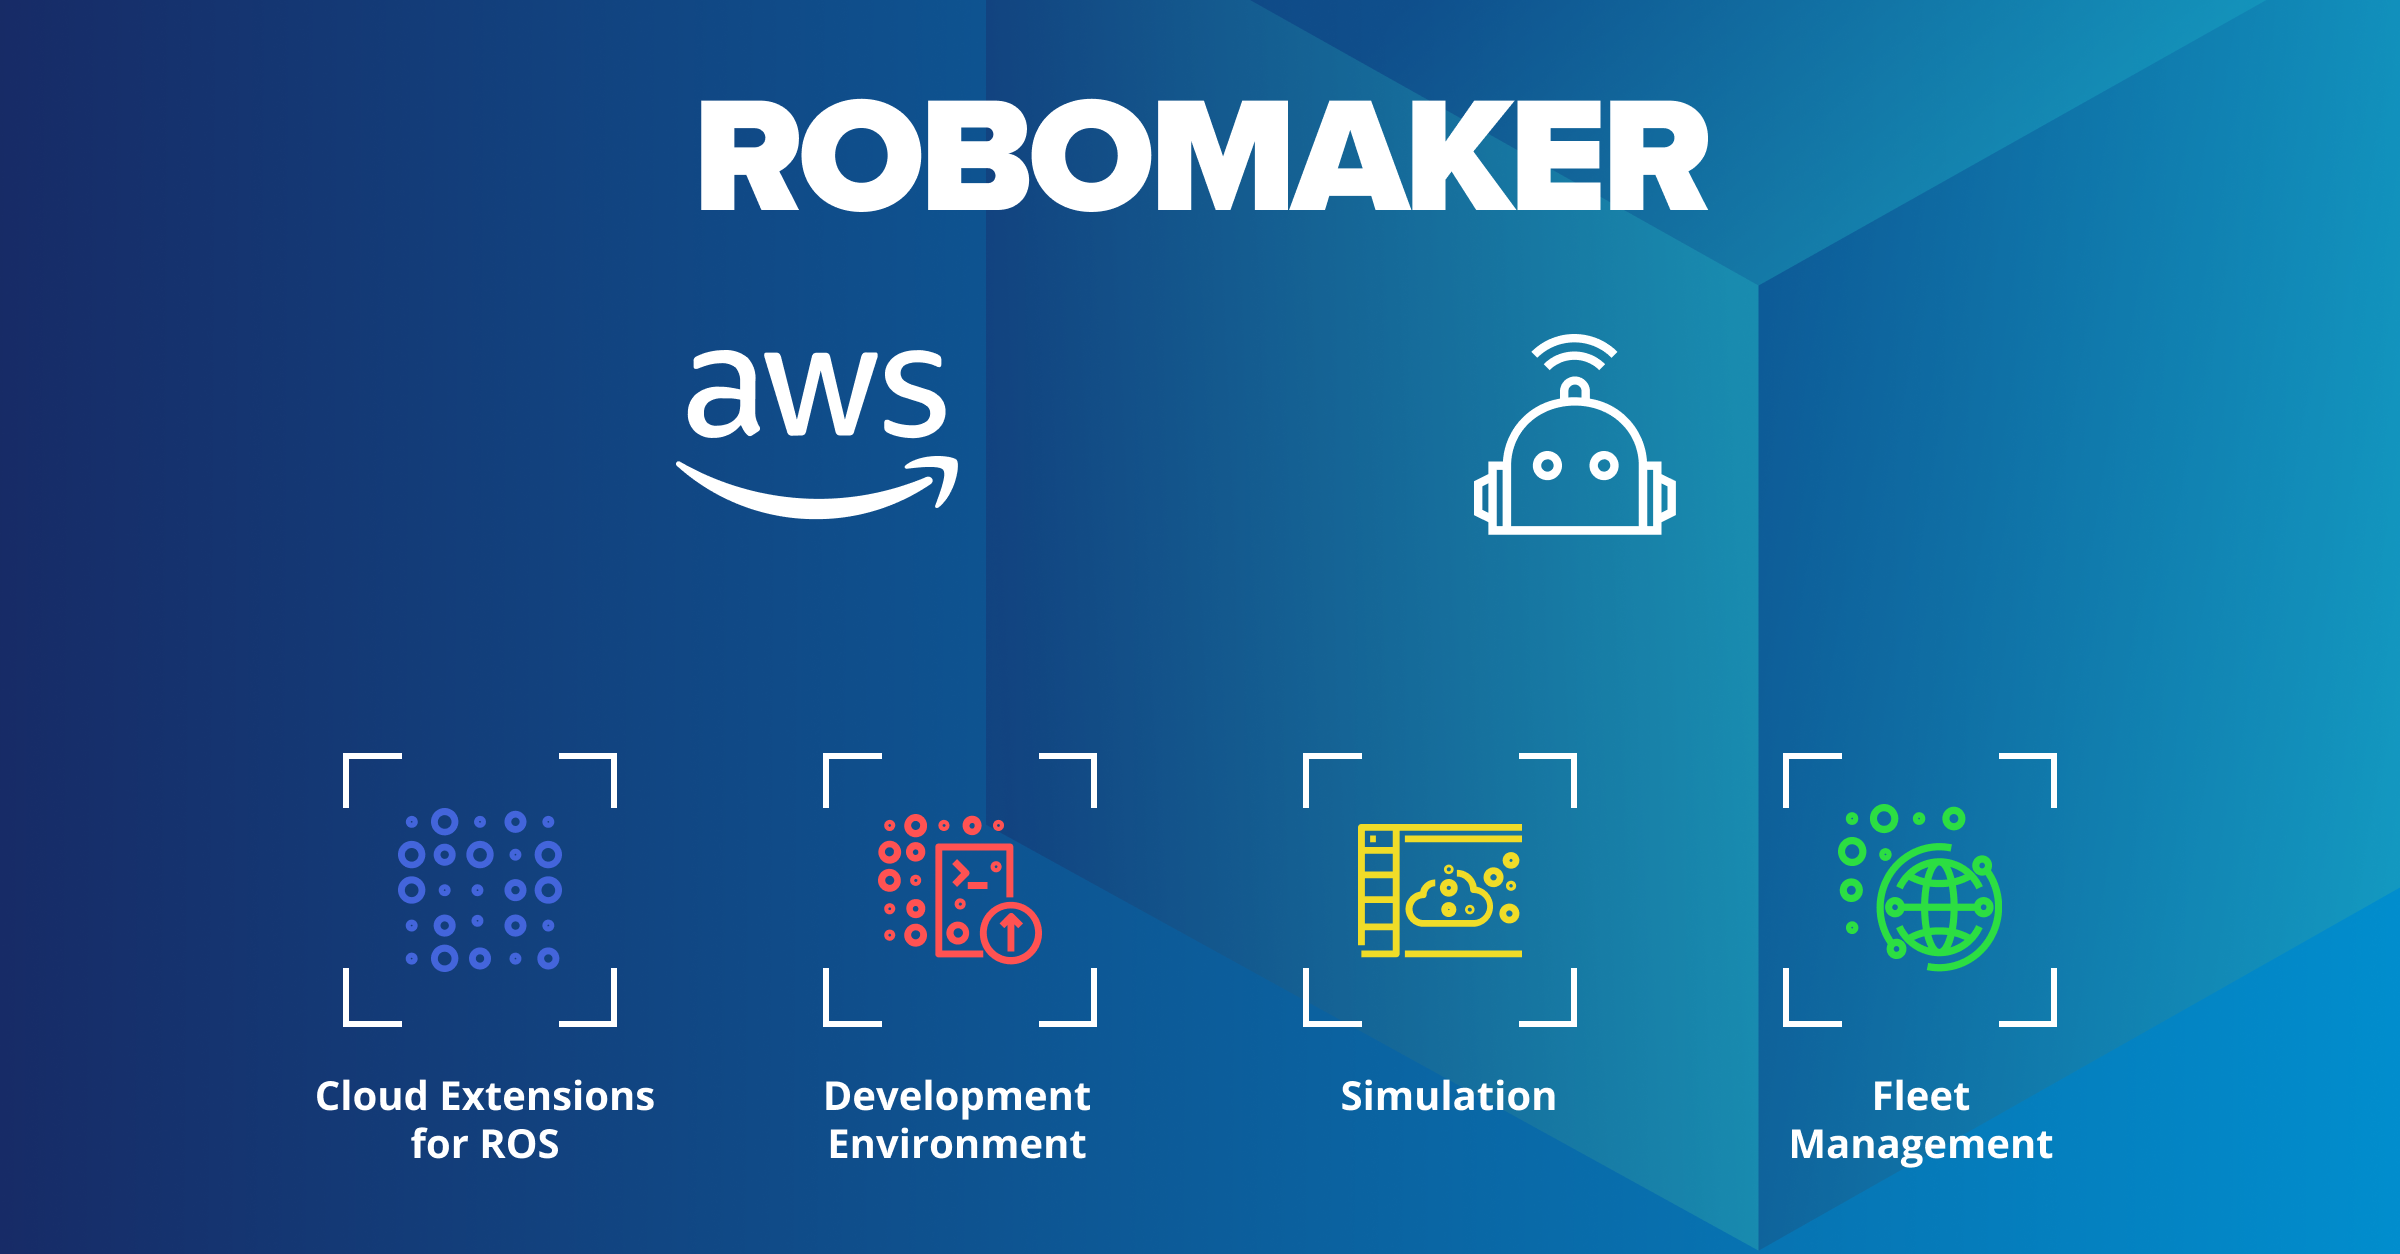 A Comprehensive Guide to Using AWS RoboMaker via the AWS Console for Robotics Application Development and Testing